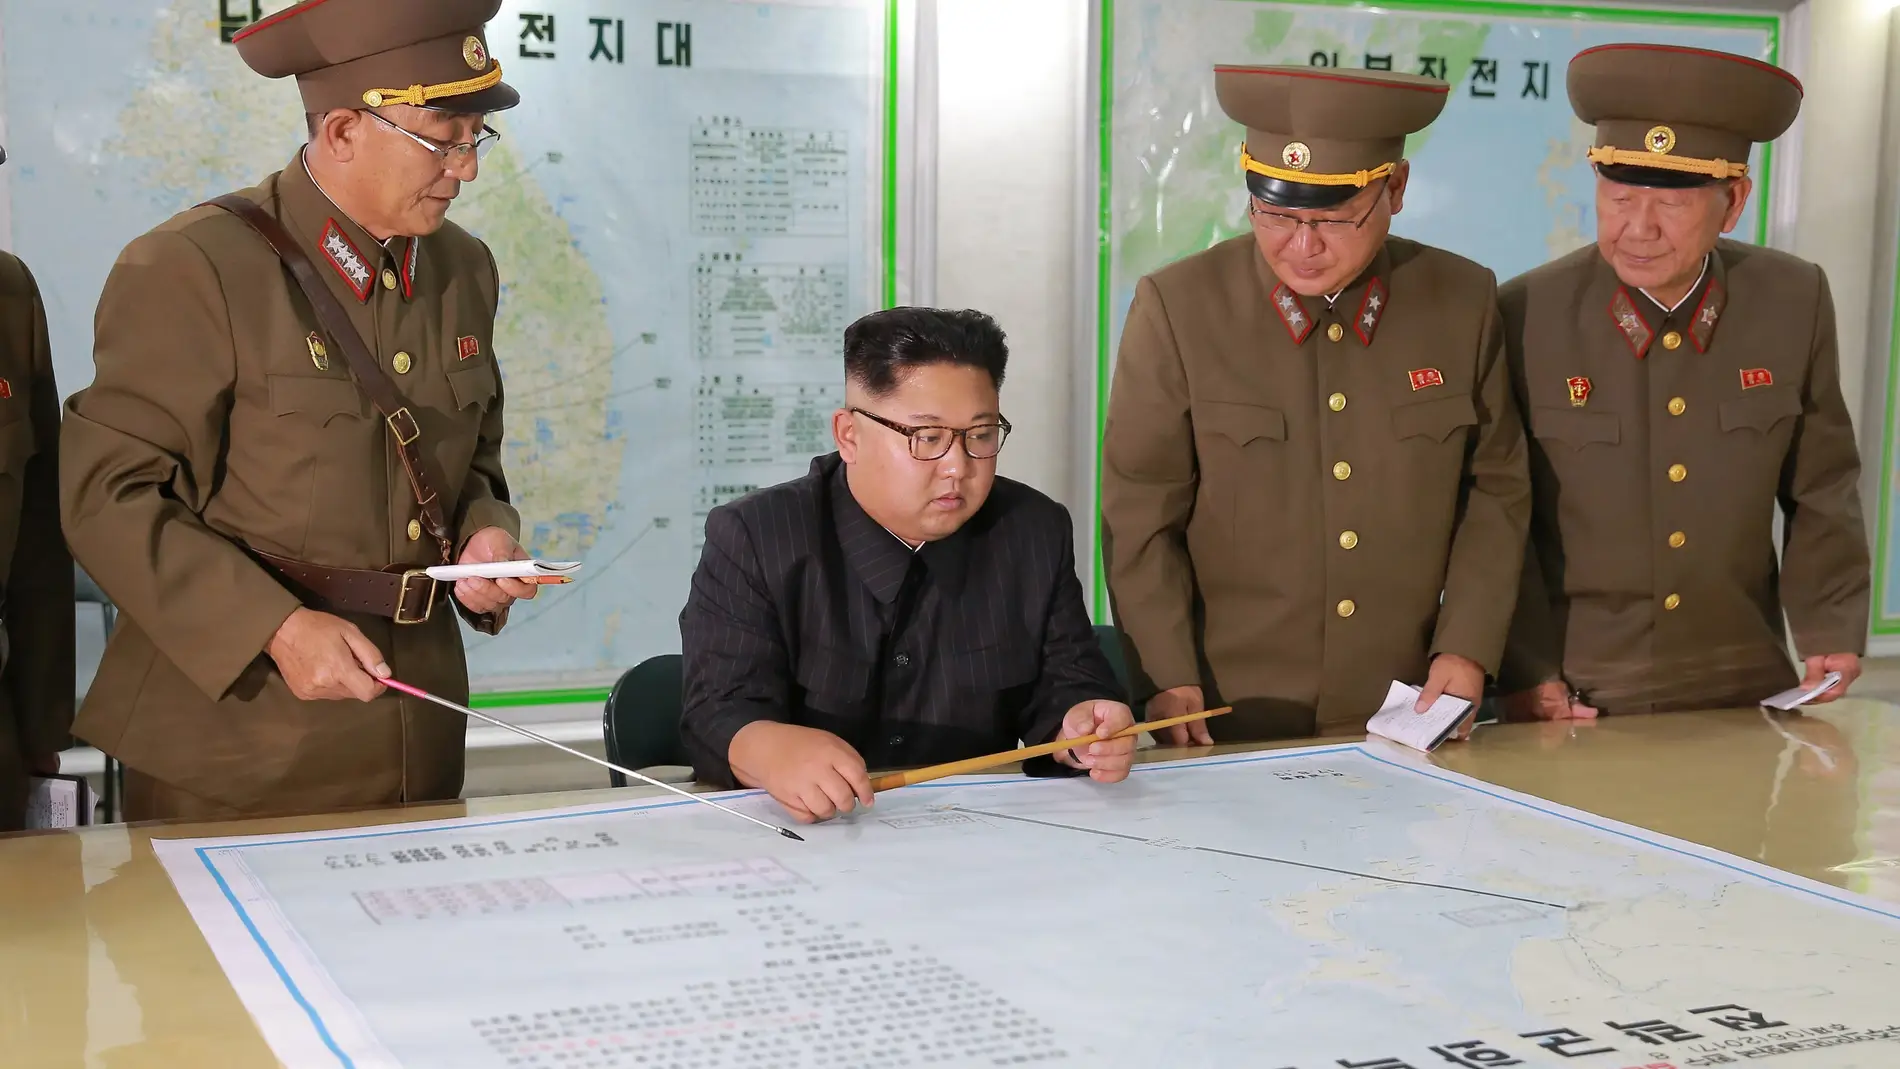 El líder norcoreano Kim Jong Un inspecciona los planes de lanzamiento de misiles